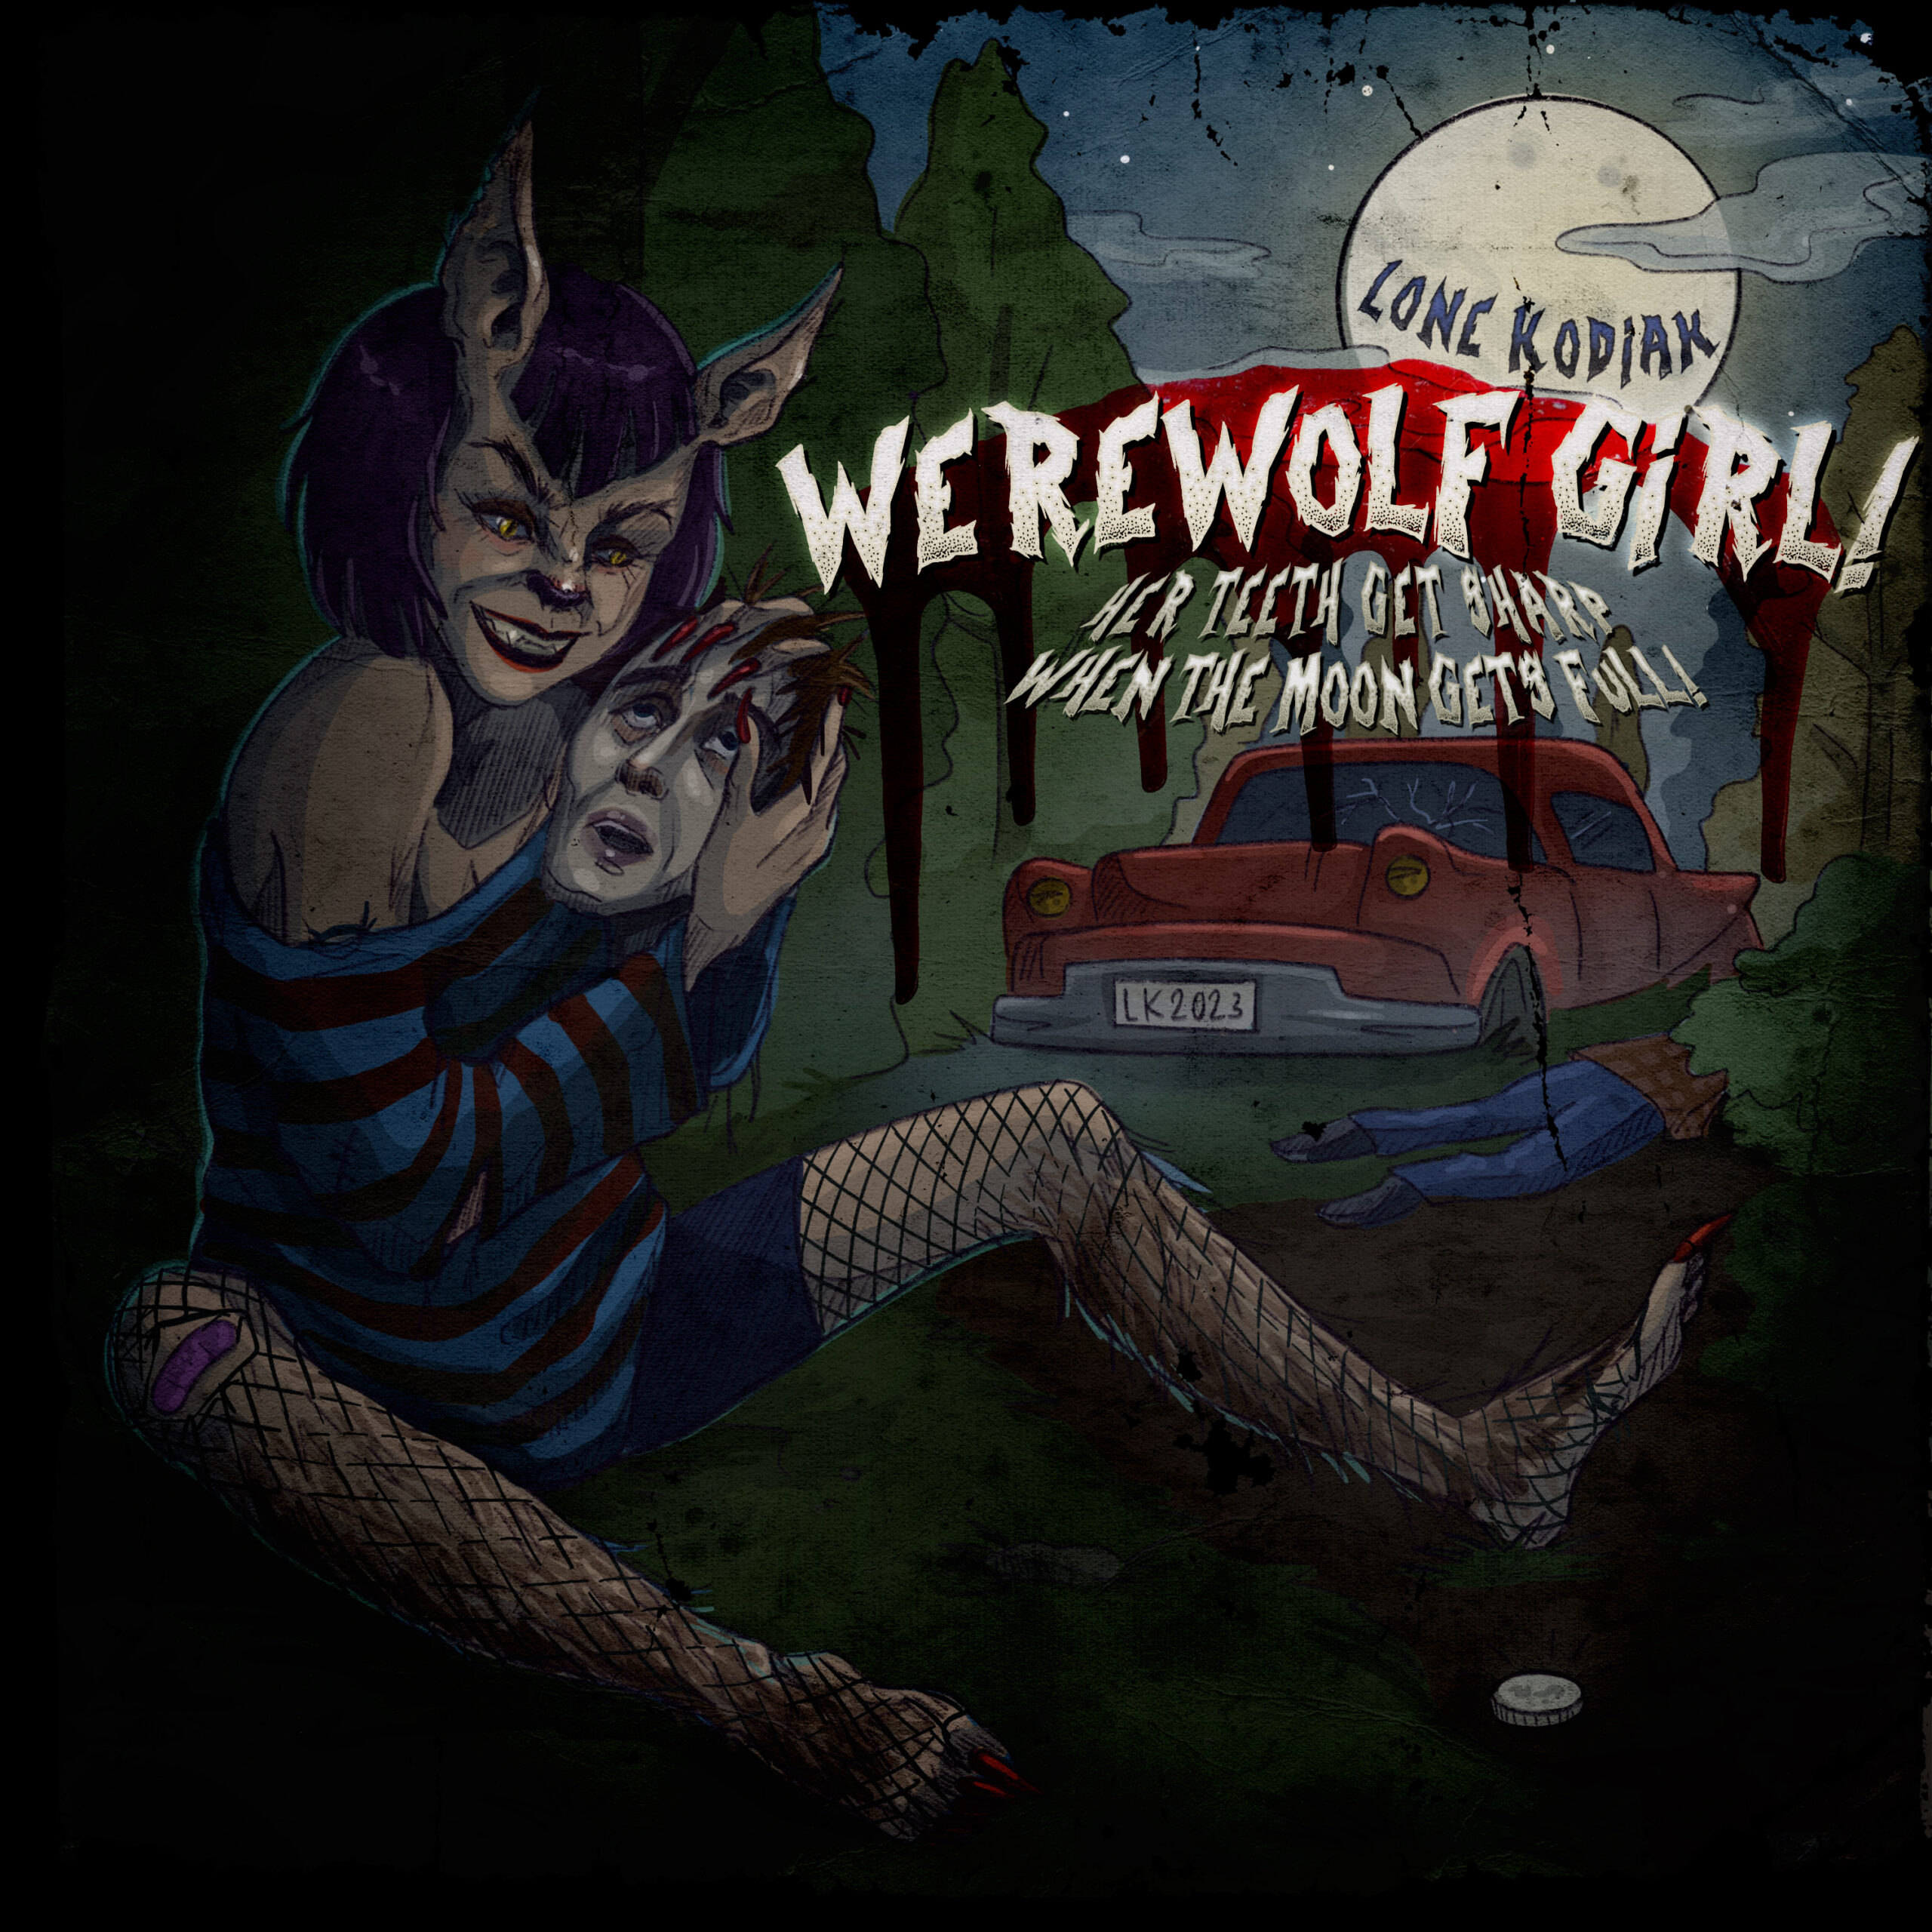 Lone Kodiak "Werewolf Girl" single artwork